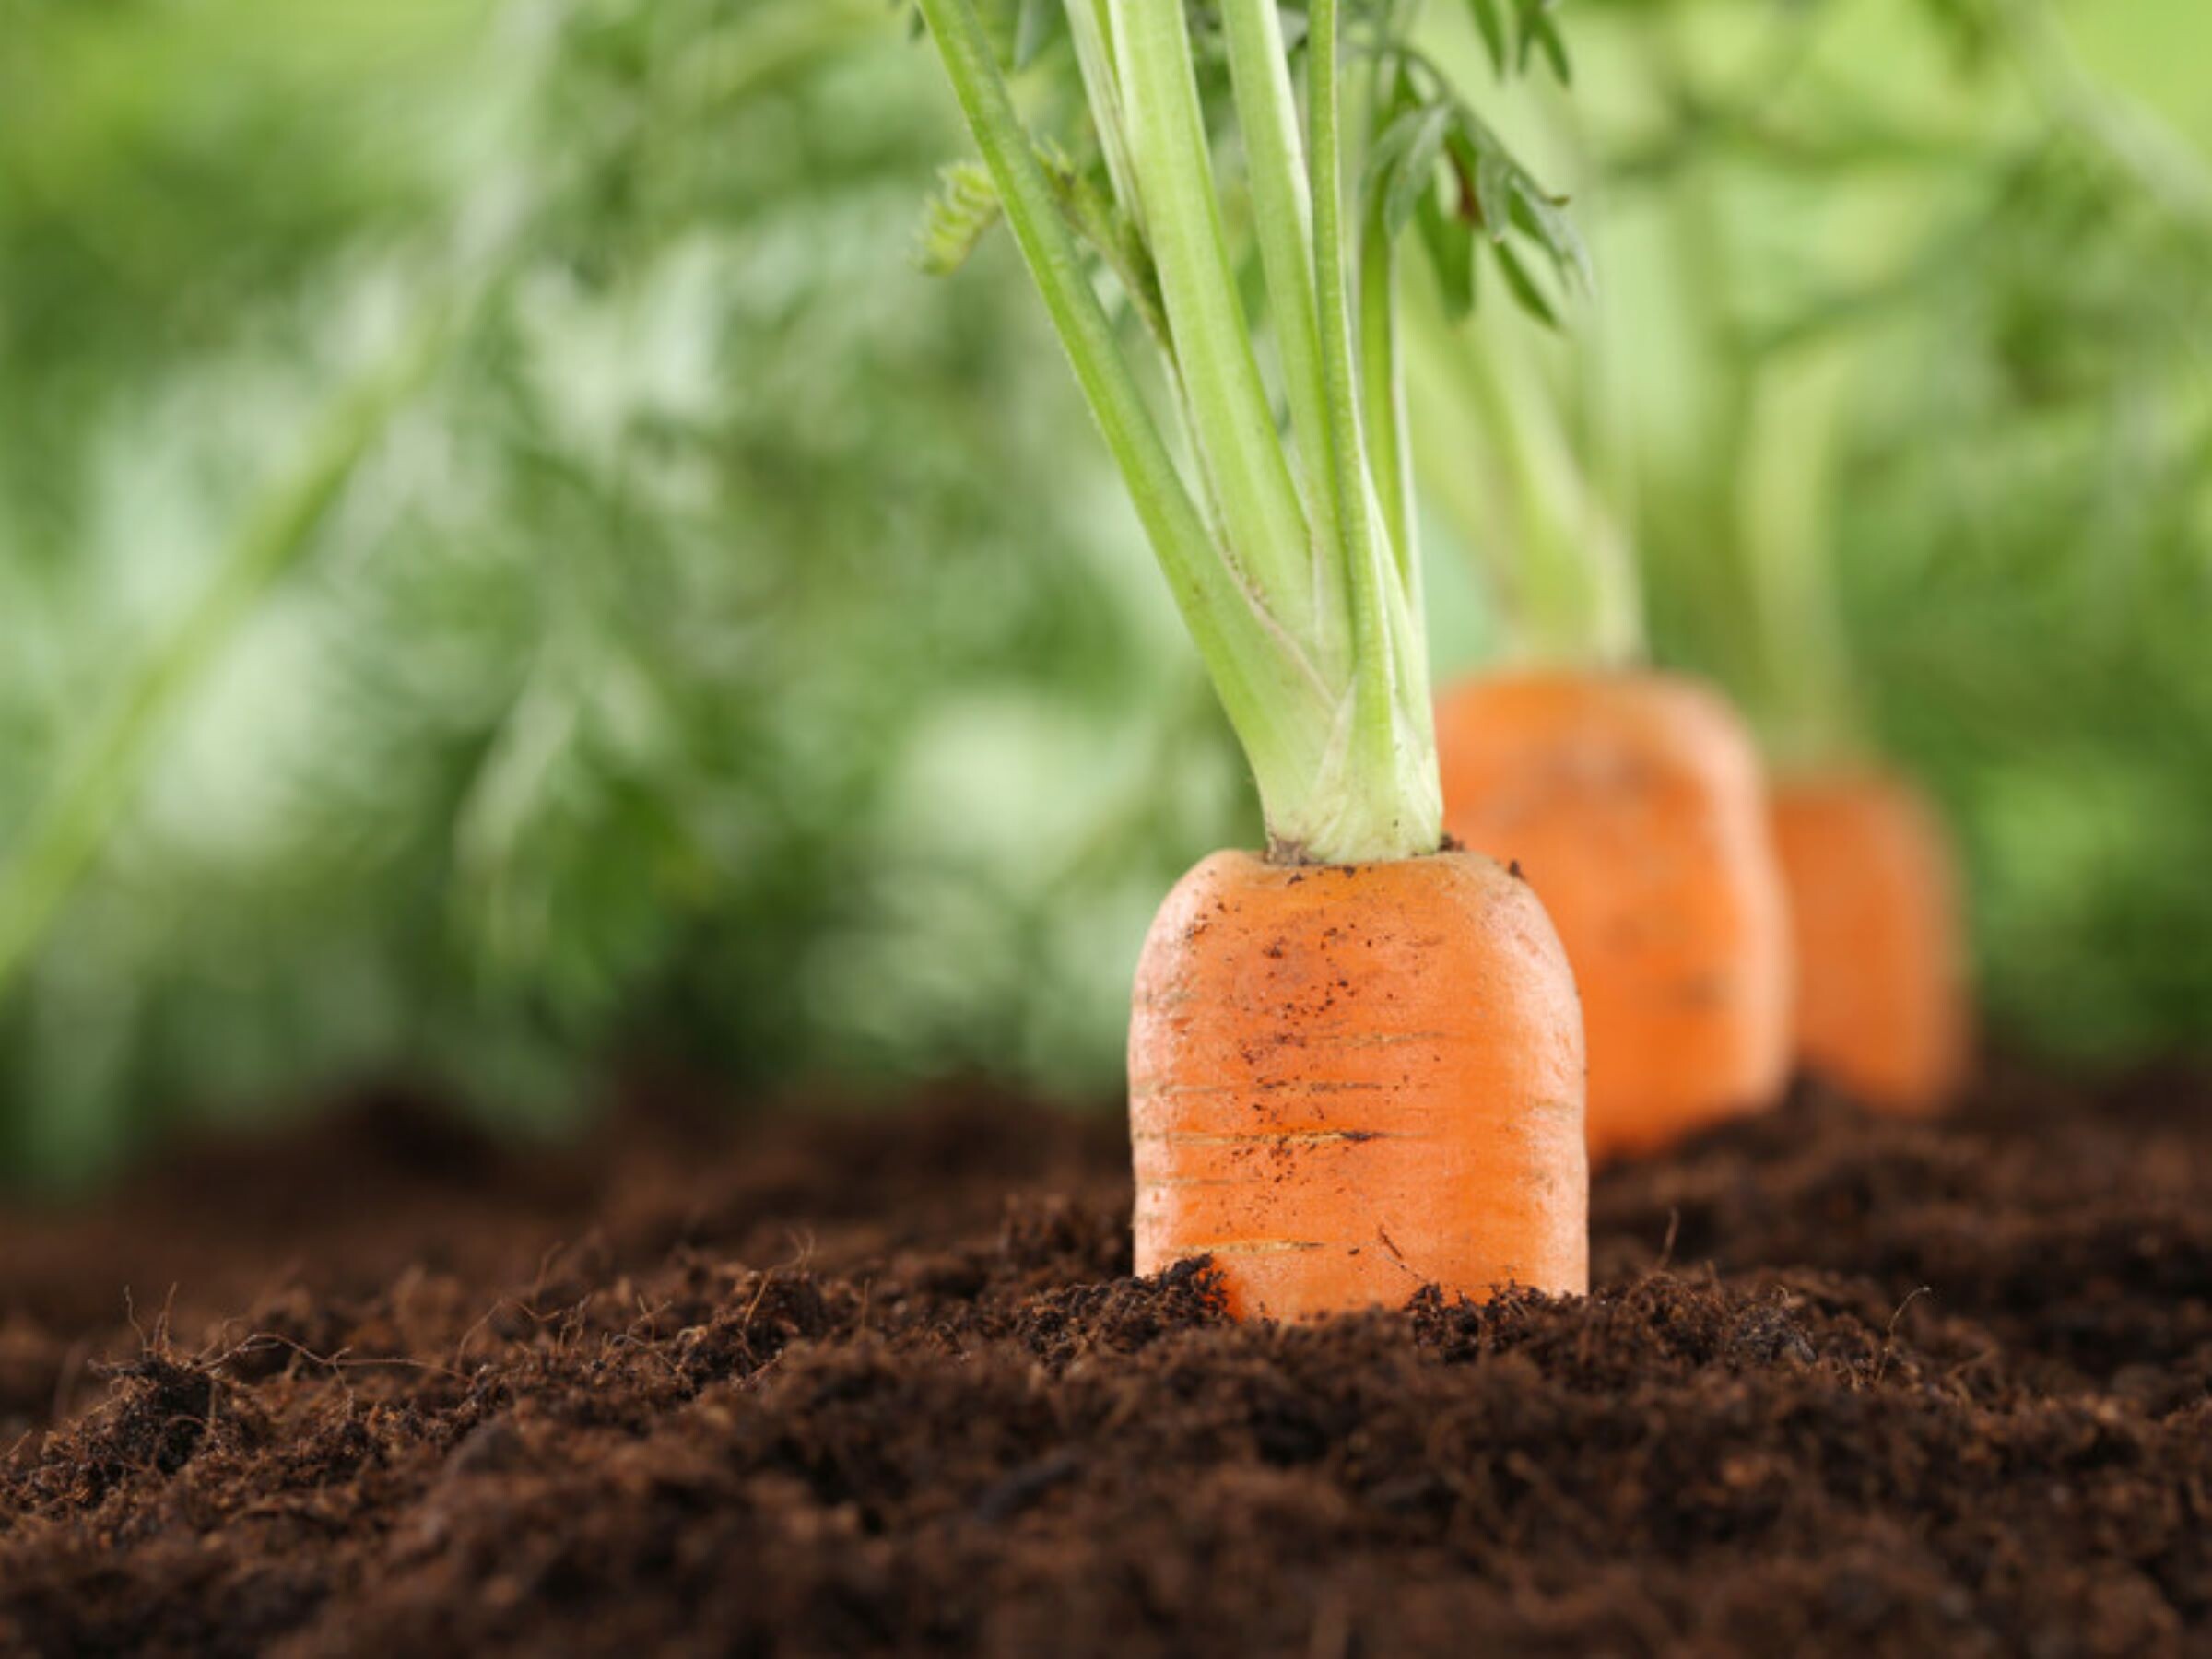 Из-за этого морковь вырастает кривой и некрасивой. Проверенные советы, как собрать щедрый урожай ровных корнеплодов